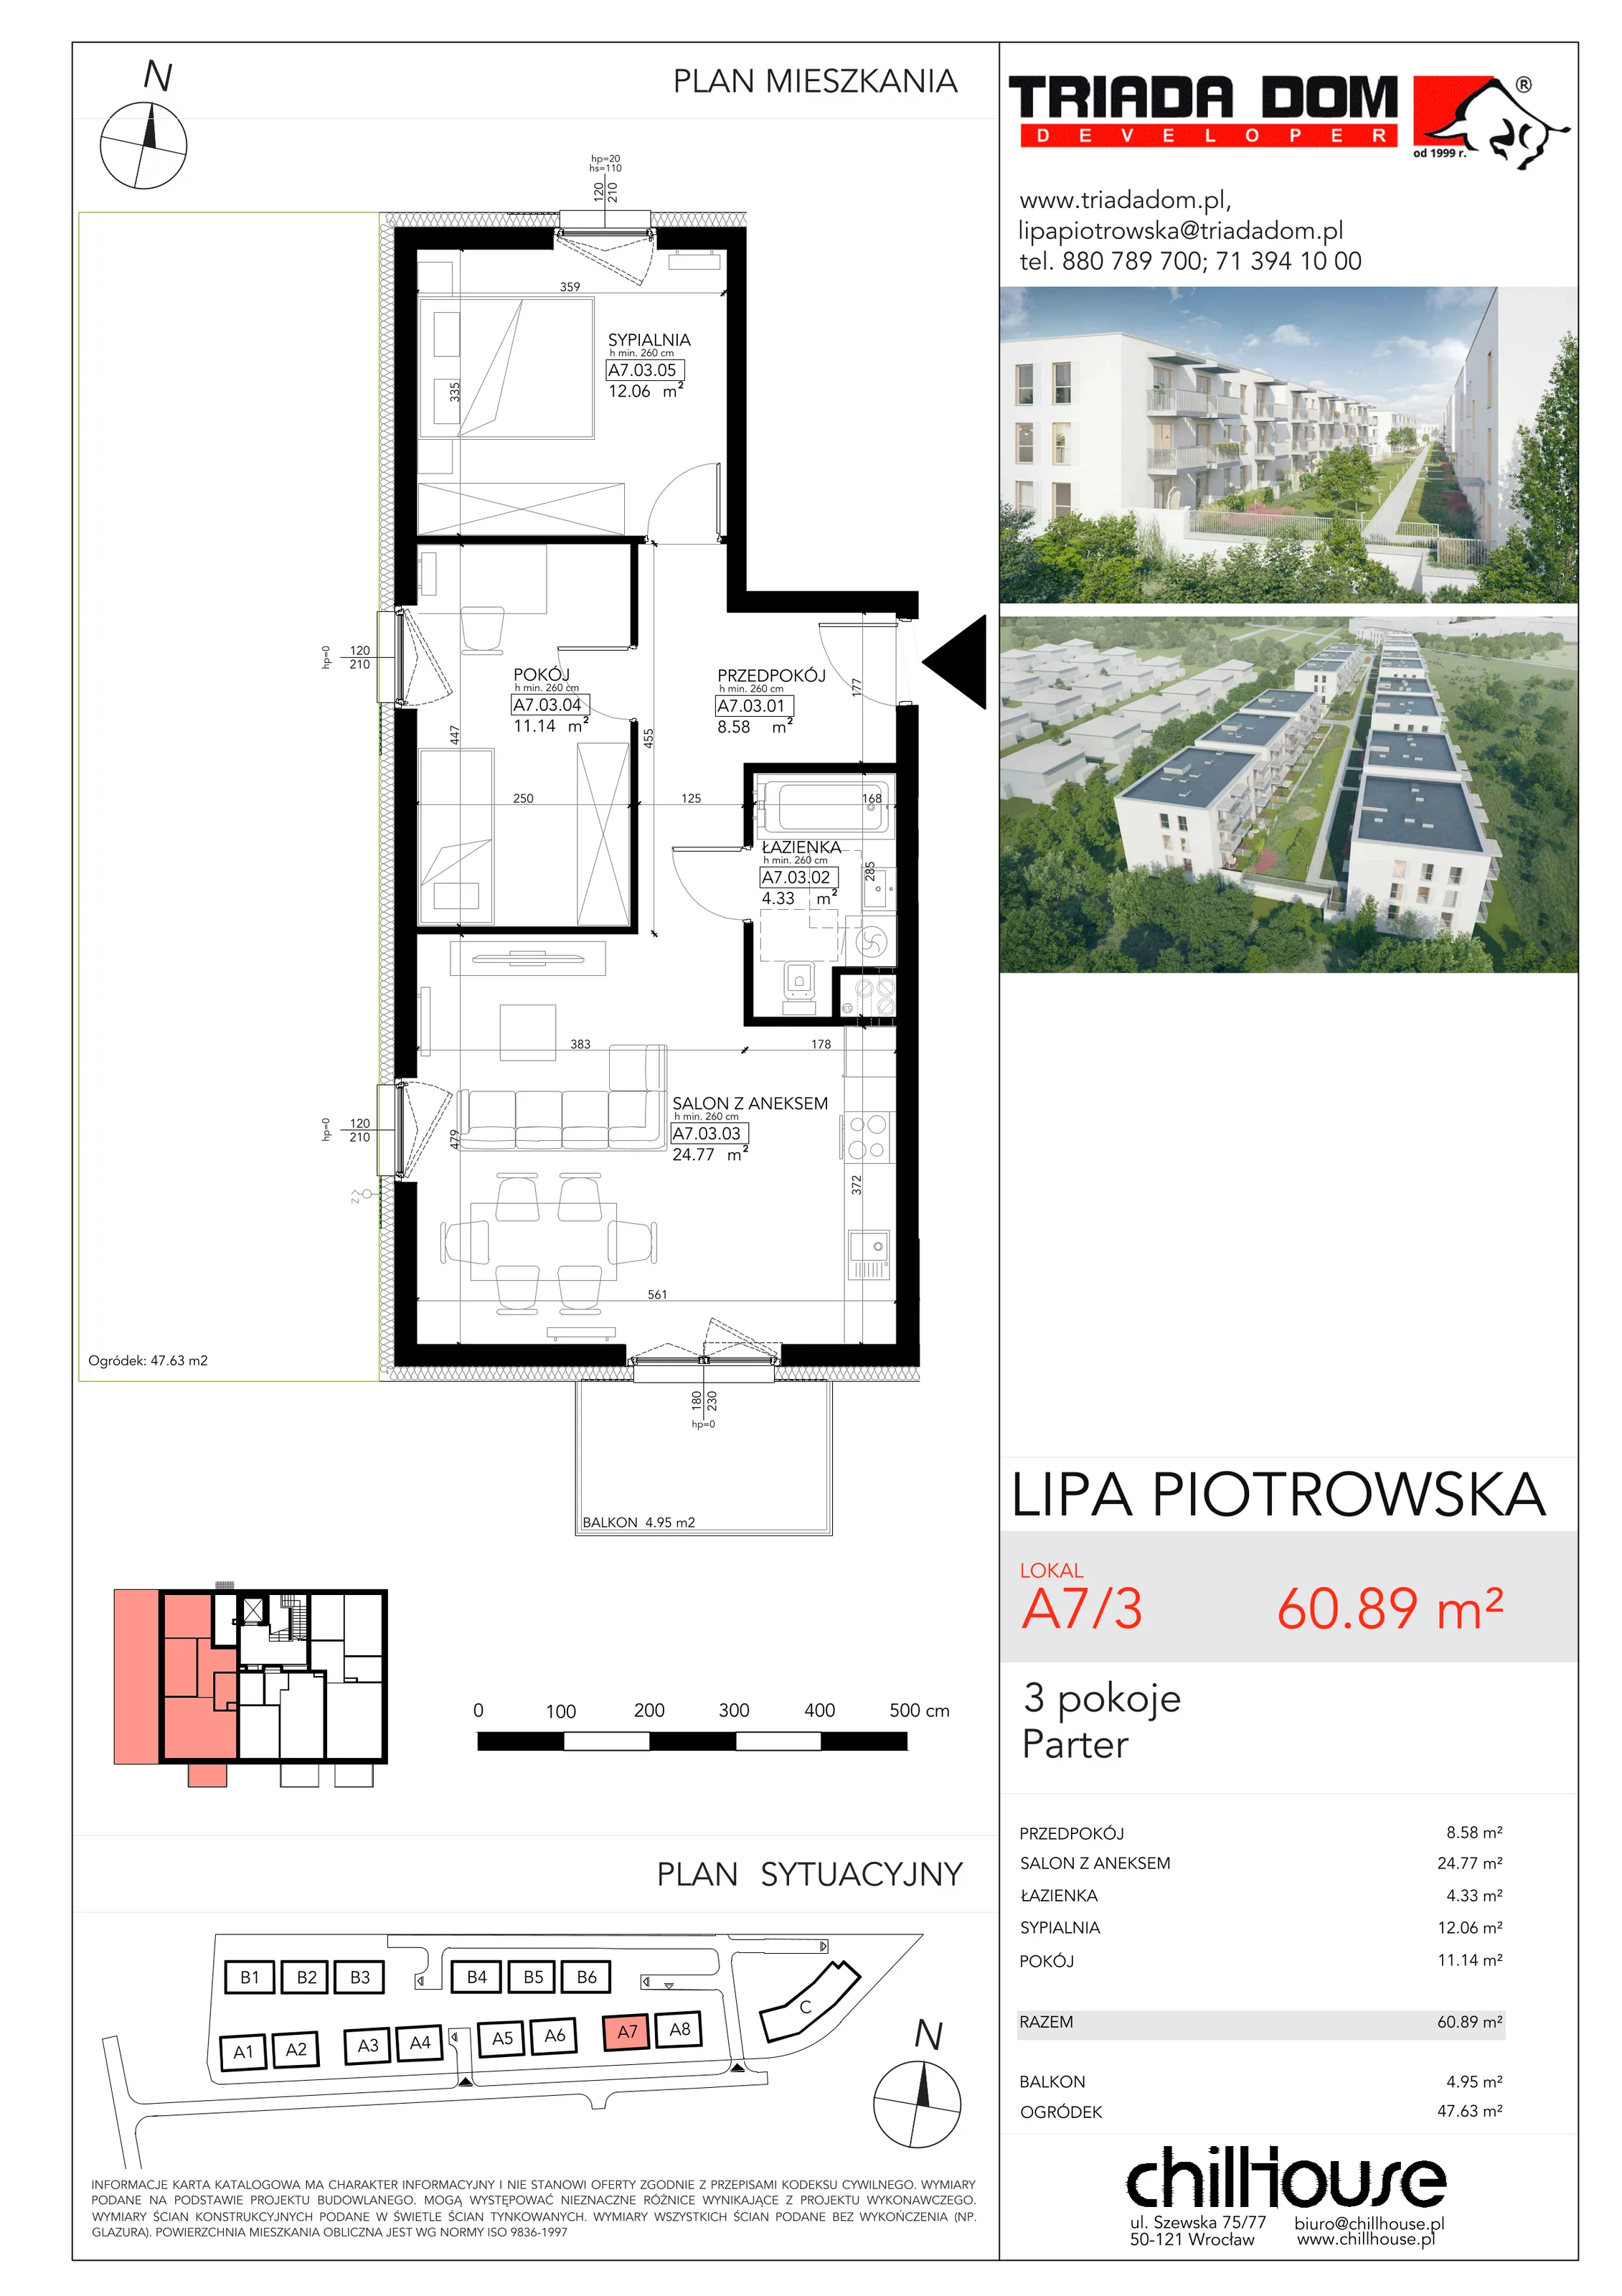 Mieszkanie 60,89 m², parter, oferta nr A73, Lipa Piotrowska, Wrocław, Lipa Piotrowska, ul. Lawendowa / Melisowa